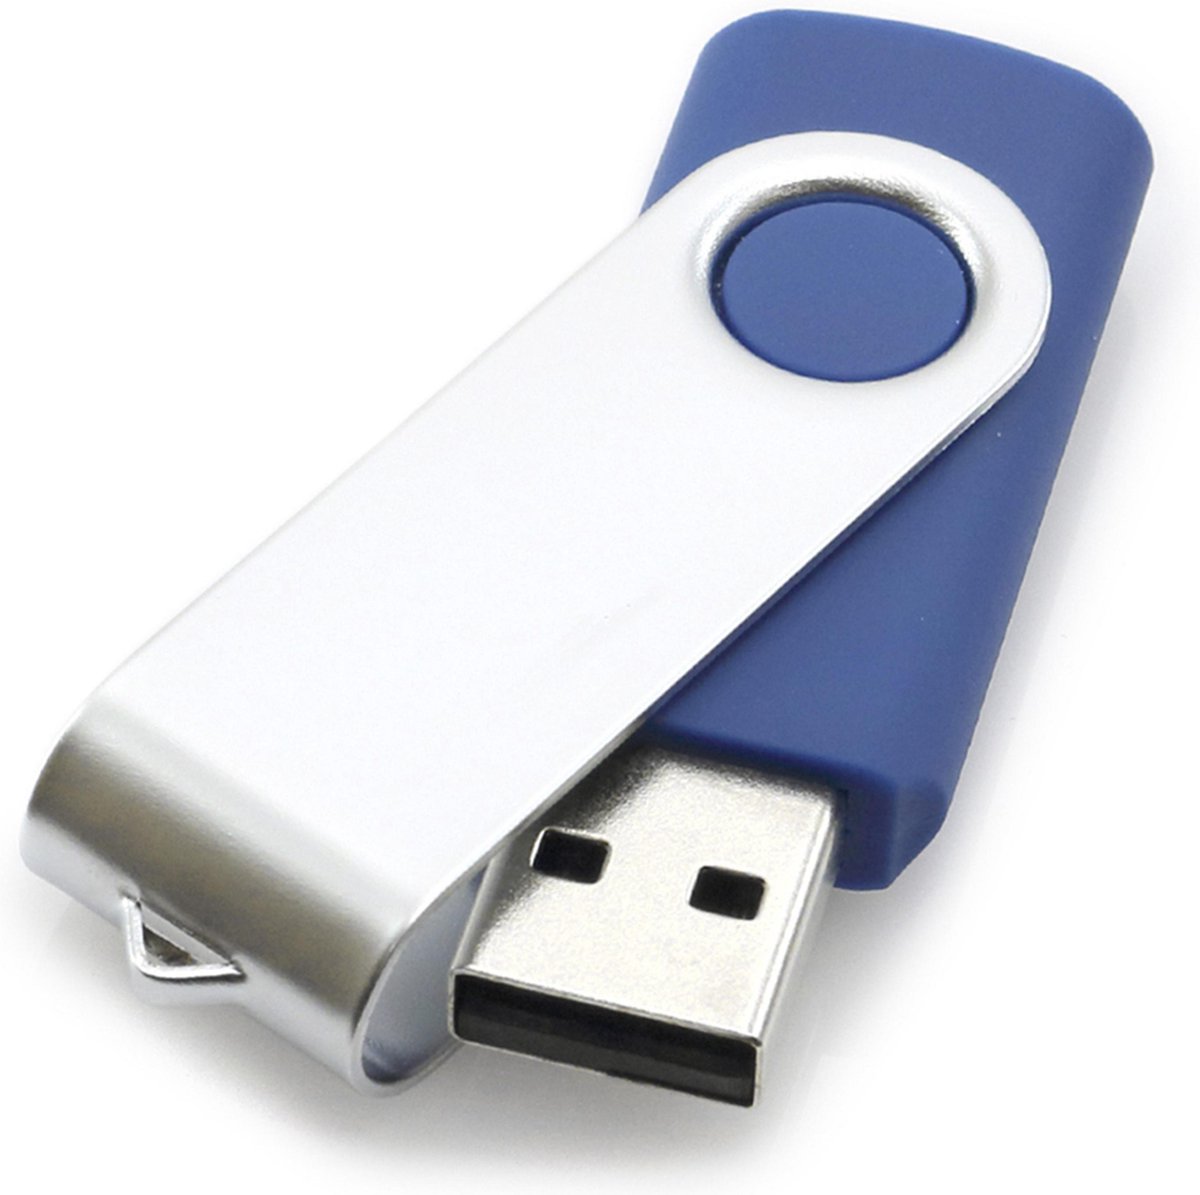 CLE USB 16Go - Matériel Informatique Occasion / SOREPI